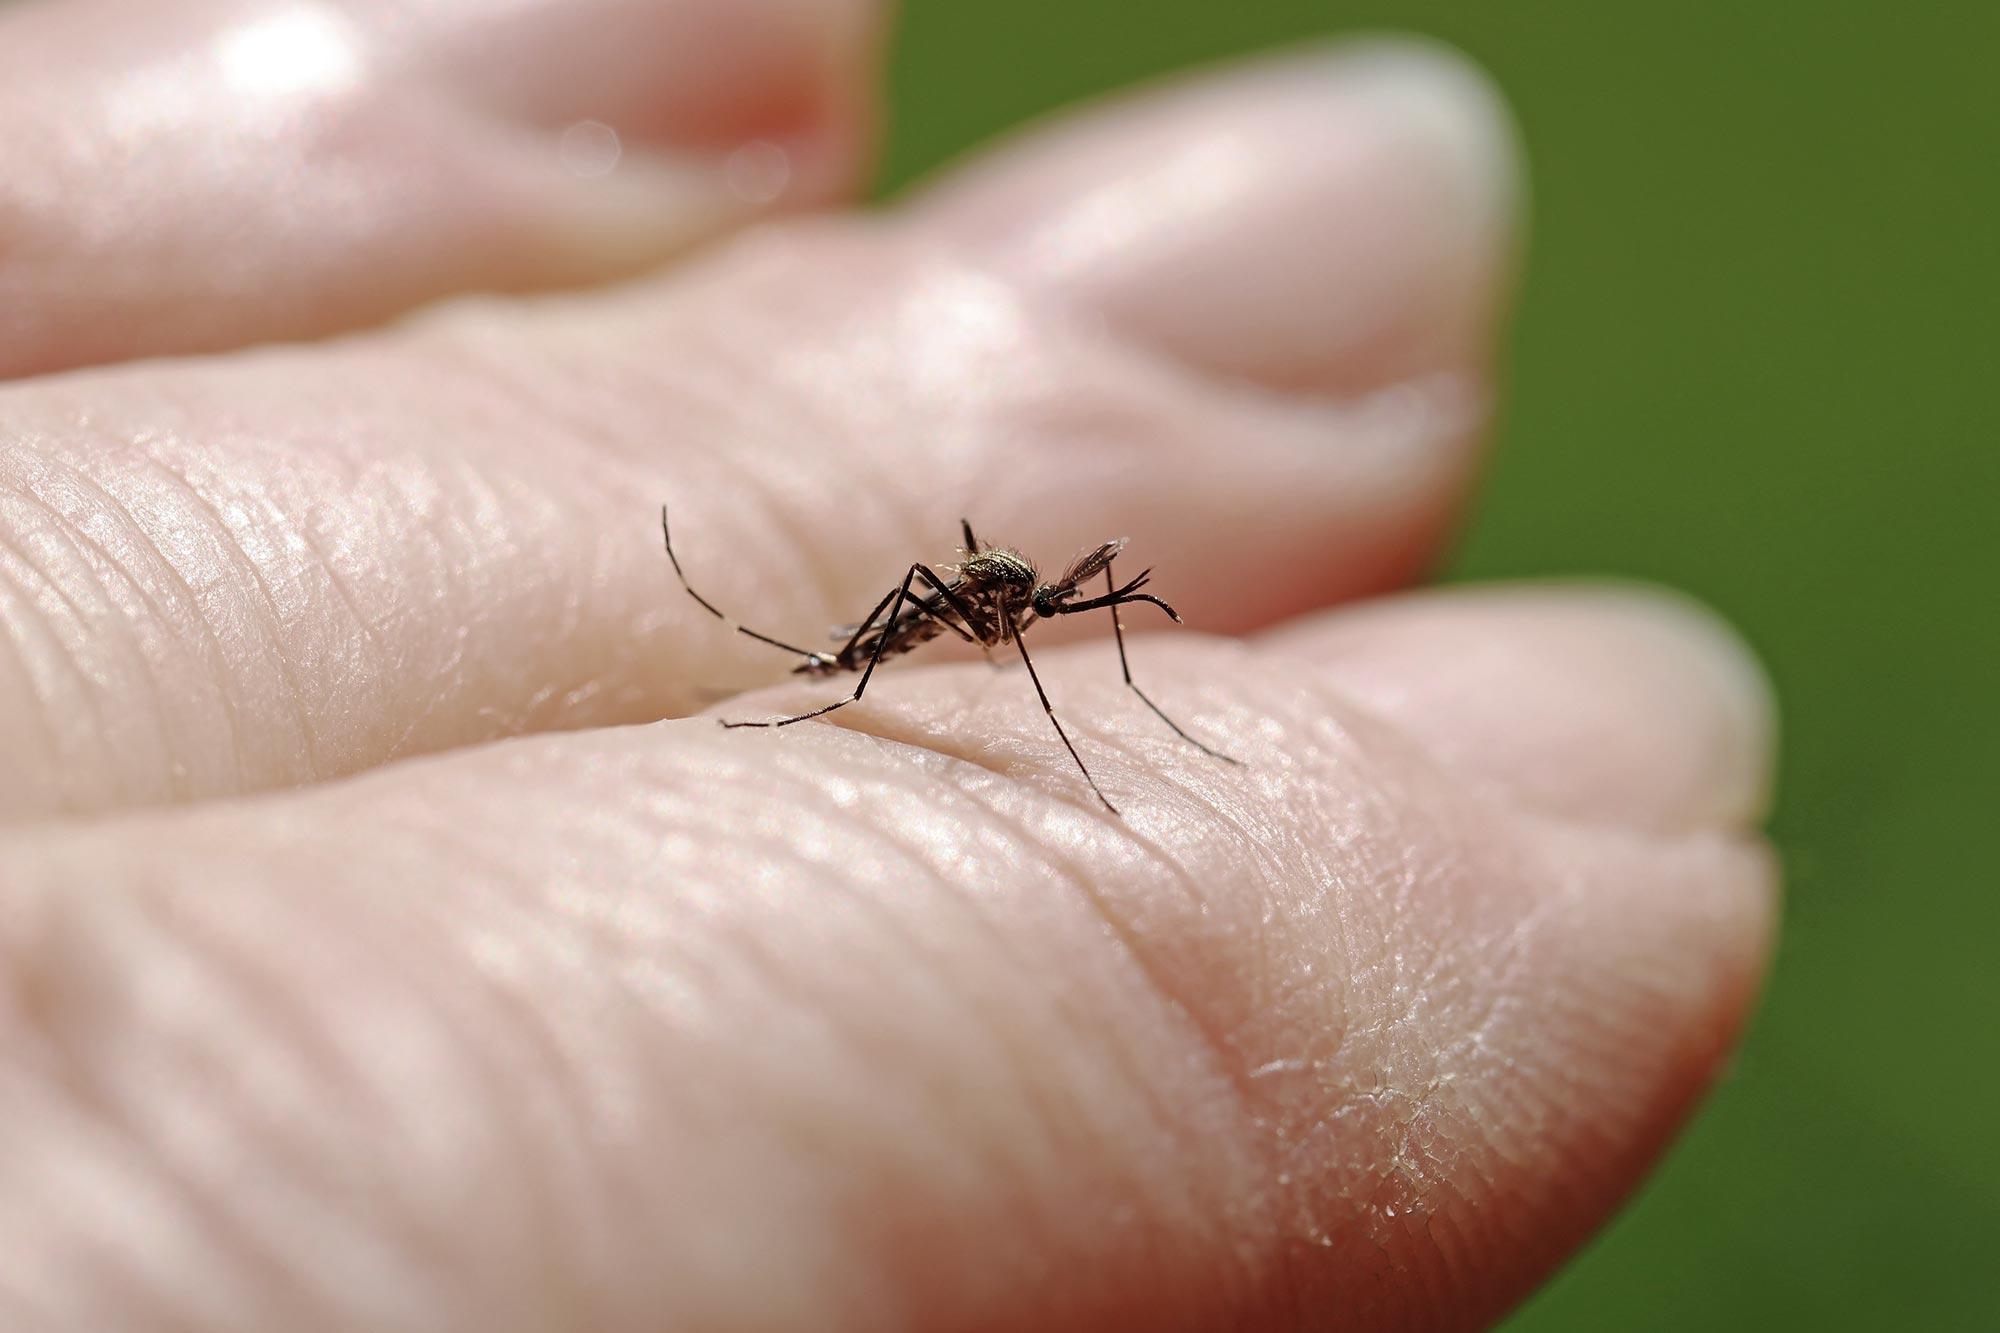 Stechmücken bevorzugen kühlere Temperaturen